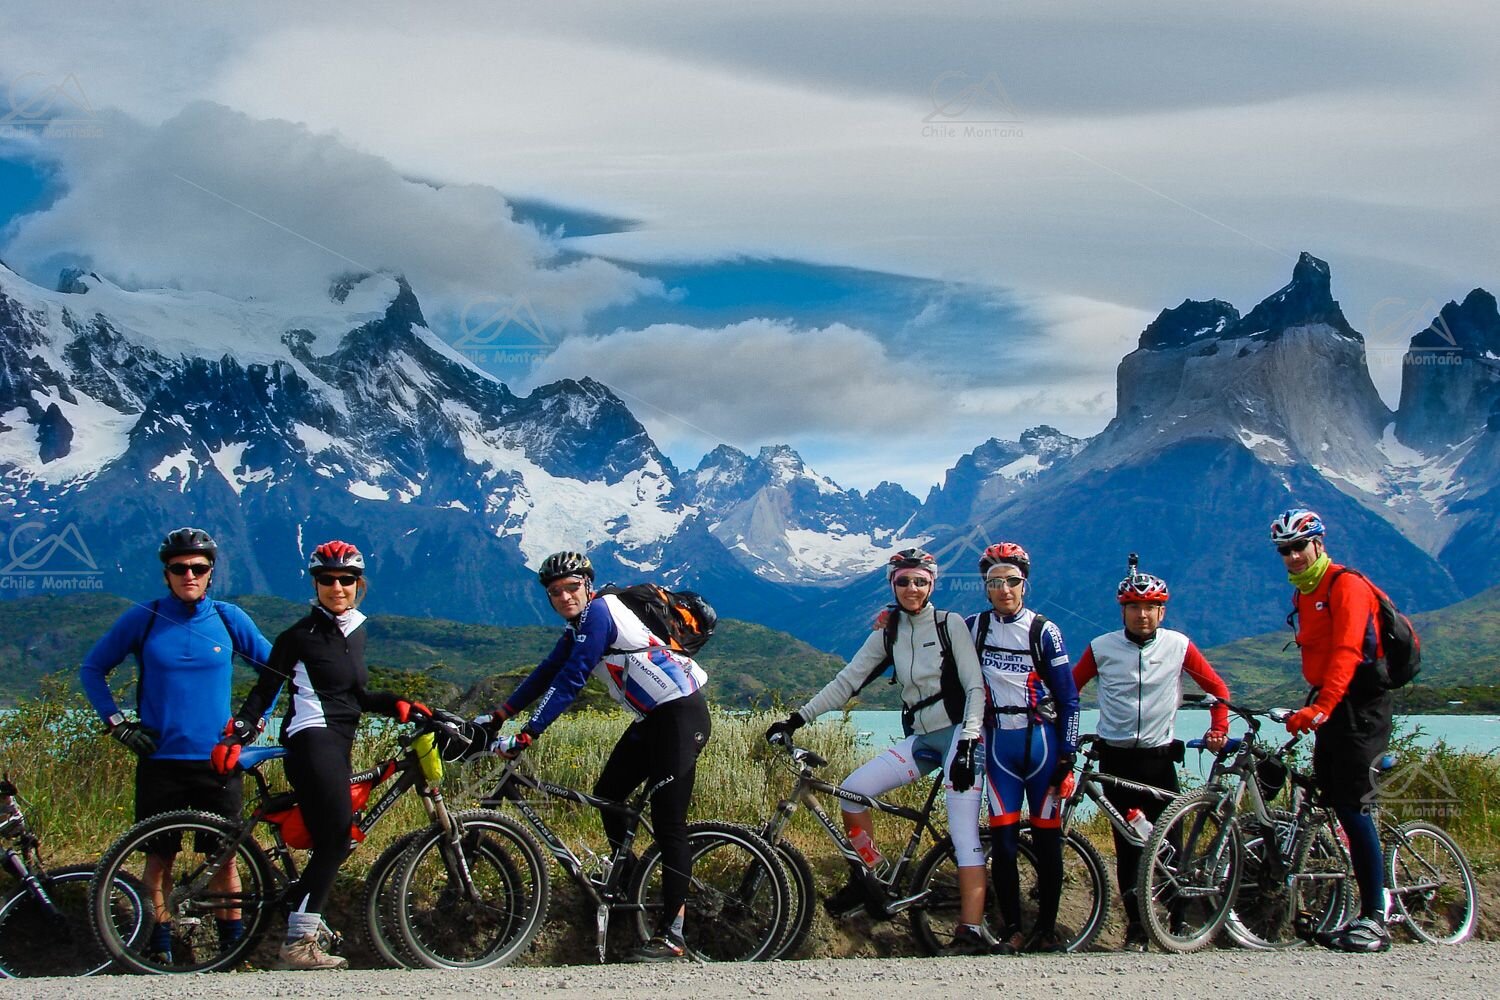 Patagonia on Two Wheels MTB Bike Tour | Chile Montaña